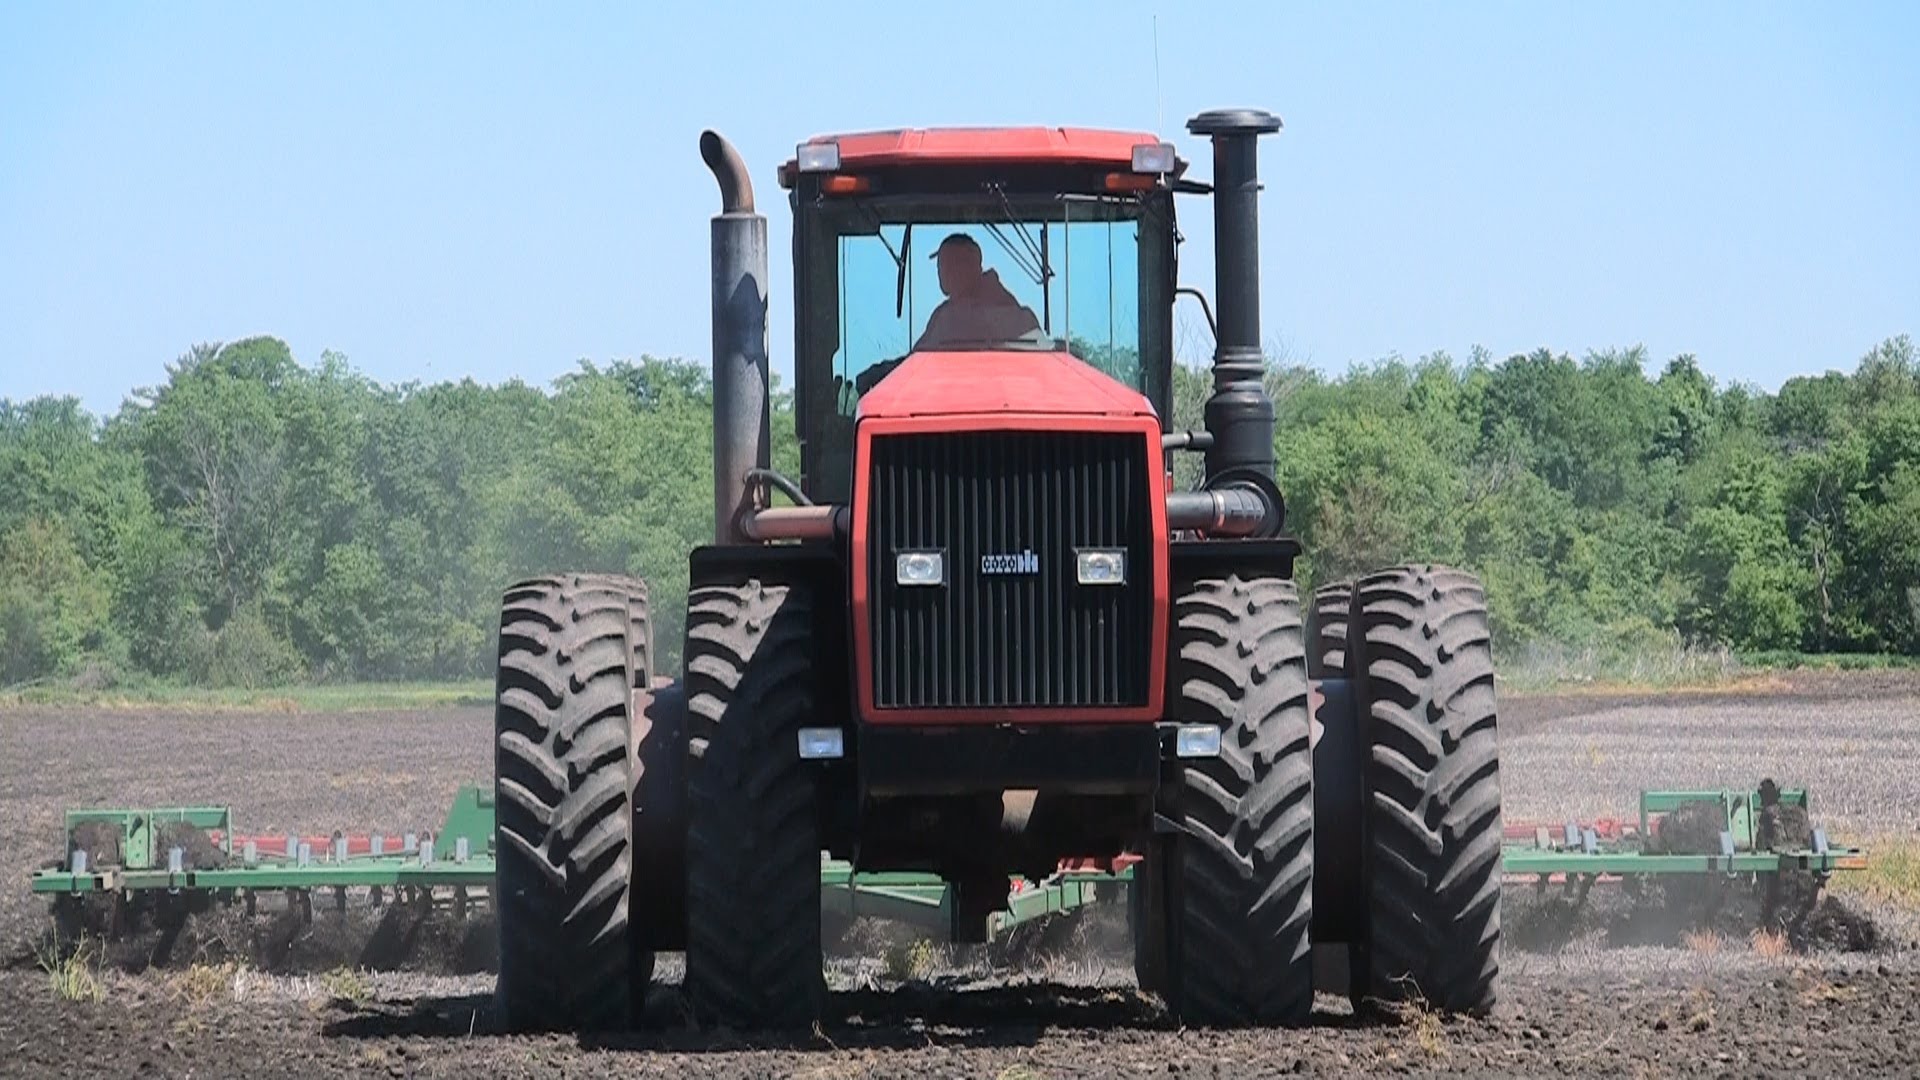 Case IH 9270 Tractor in Kirkland, Illinois on 5-24-2013 - YouTube